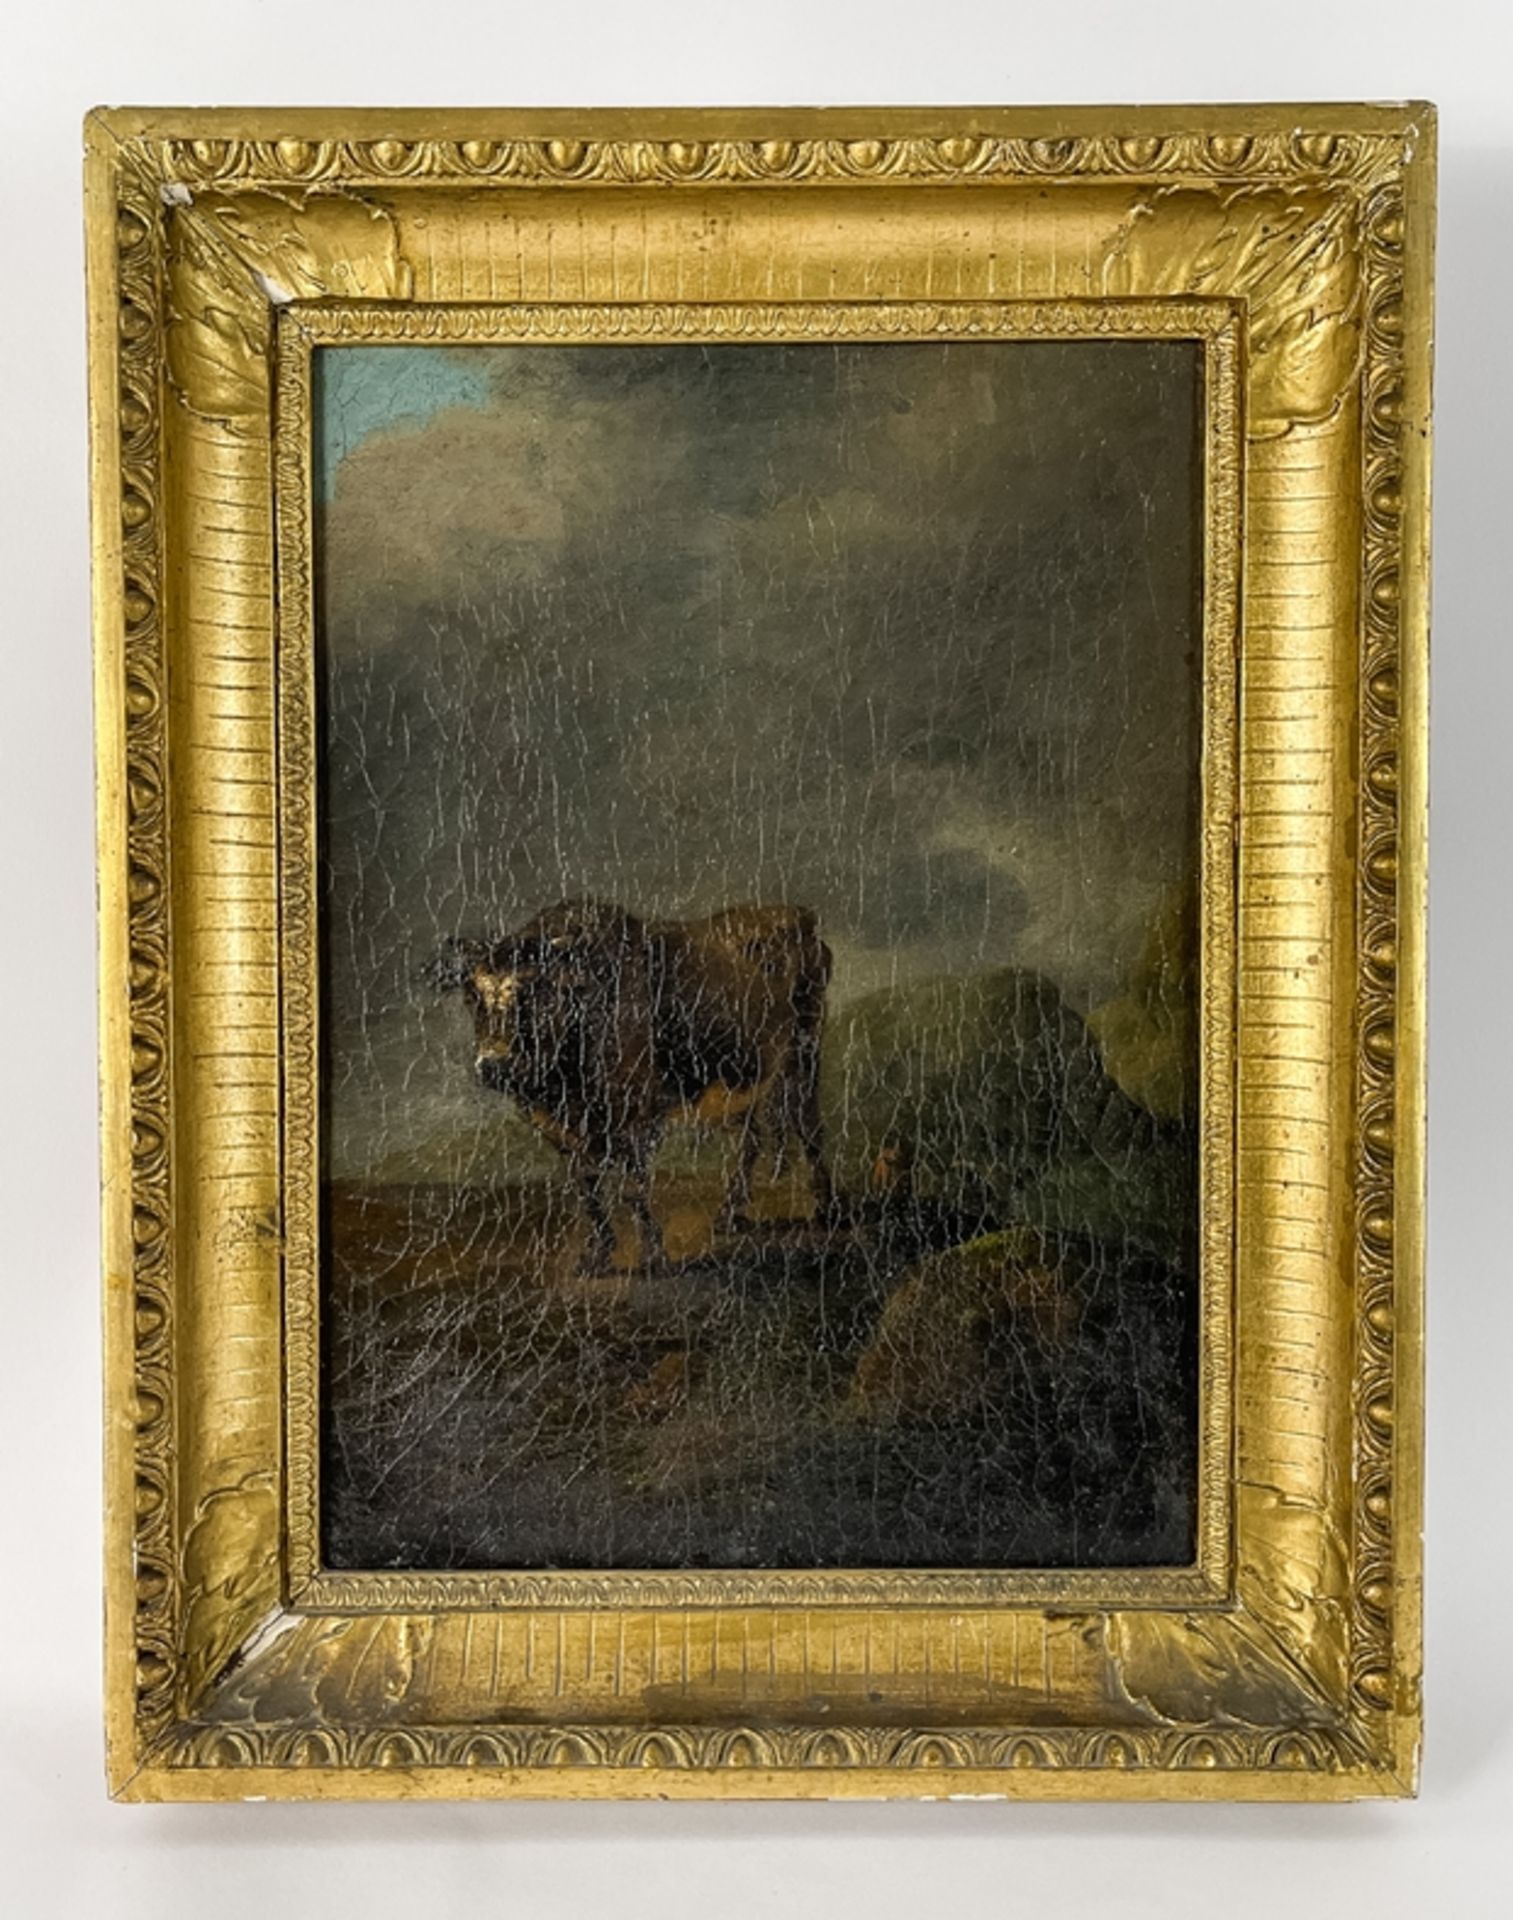 Gemälde "Stier in italienischer Landschaft"